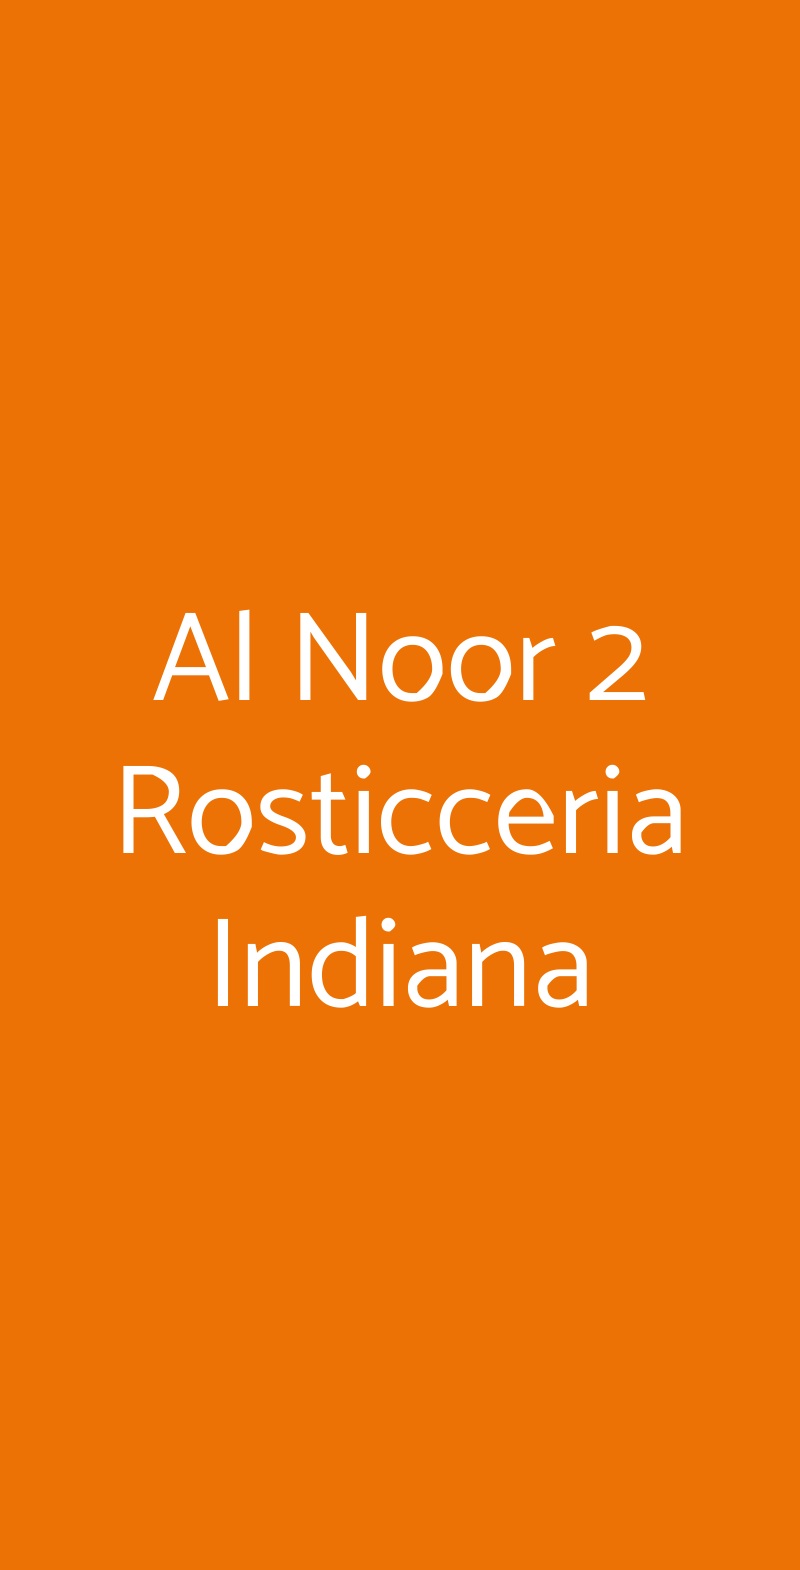 Al Noor 2 Rosticceria Indiana Milano menù 1 pagina